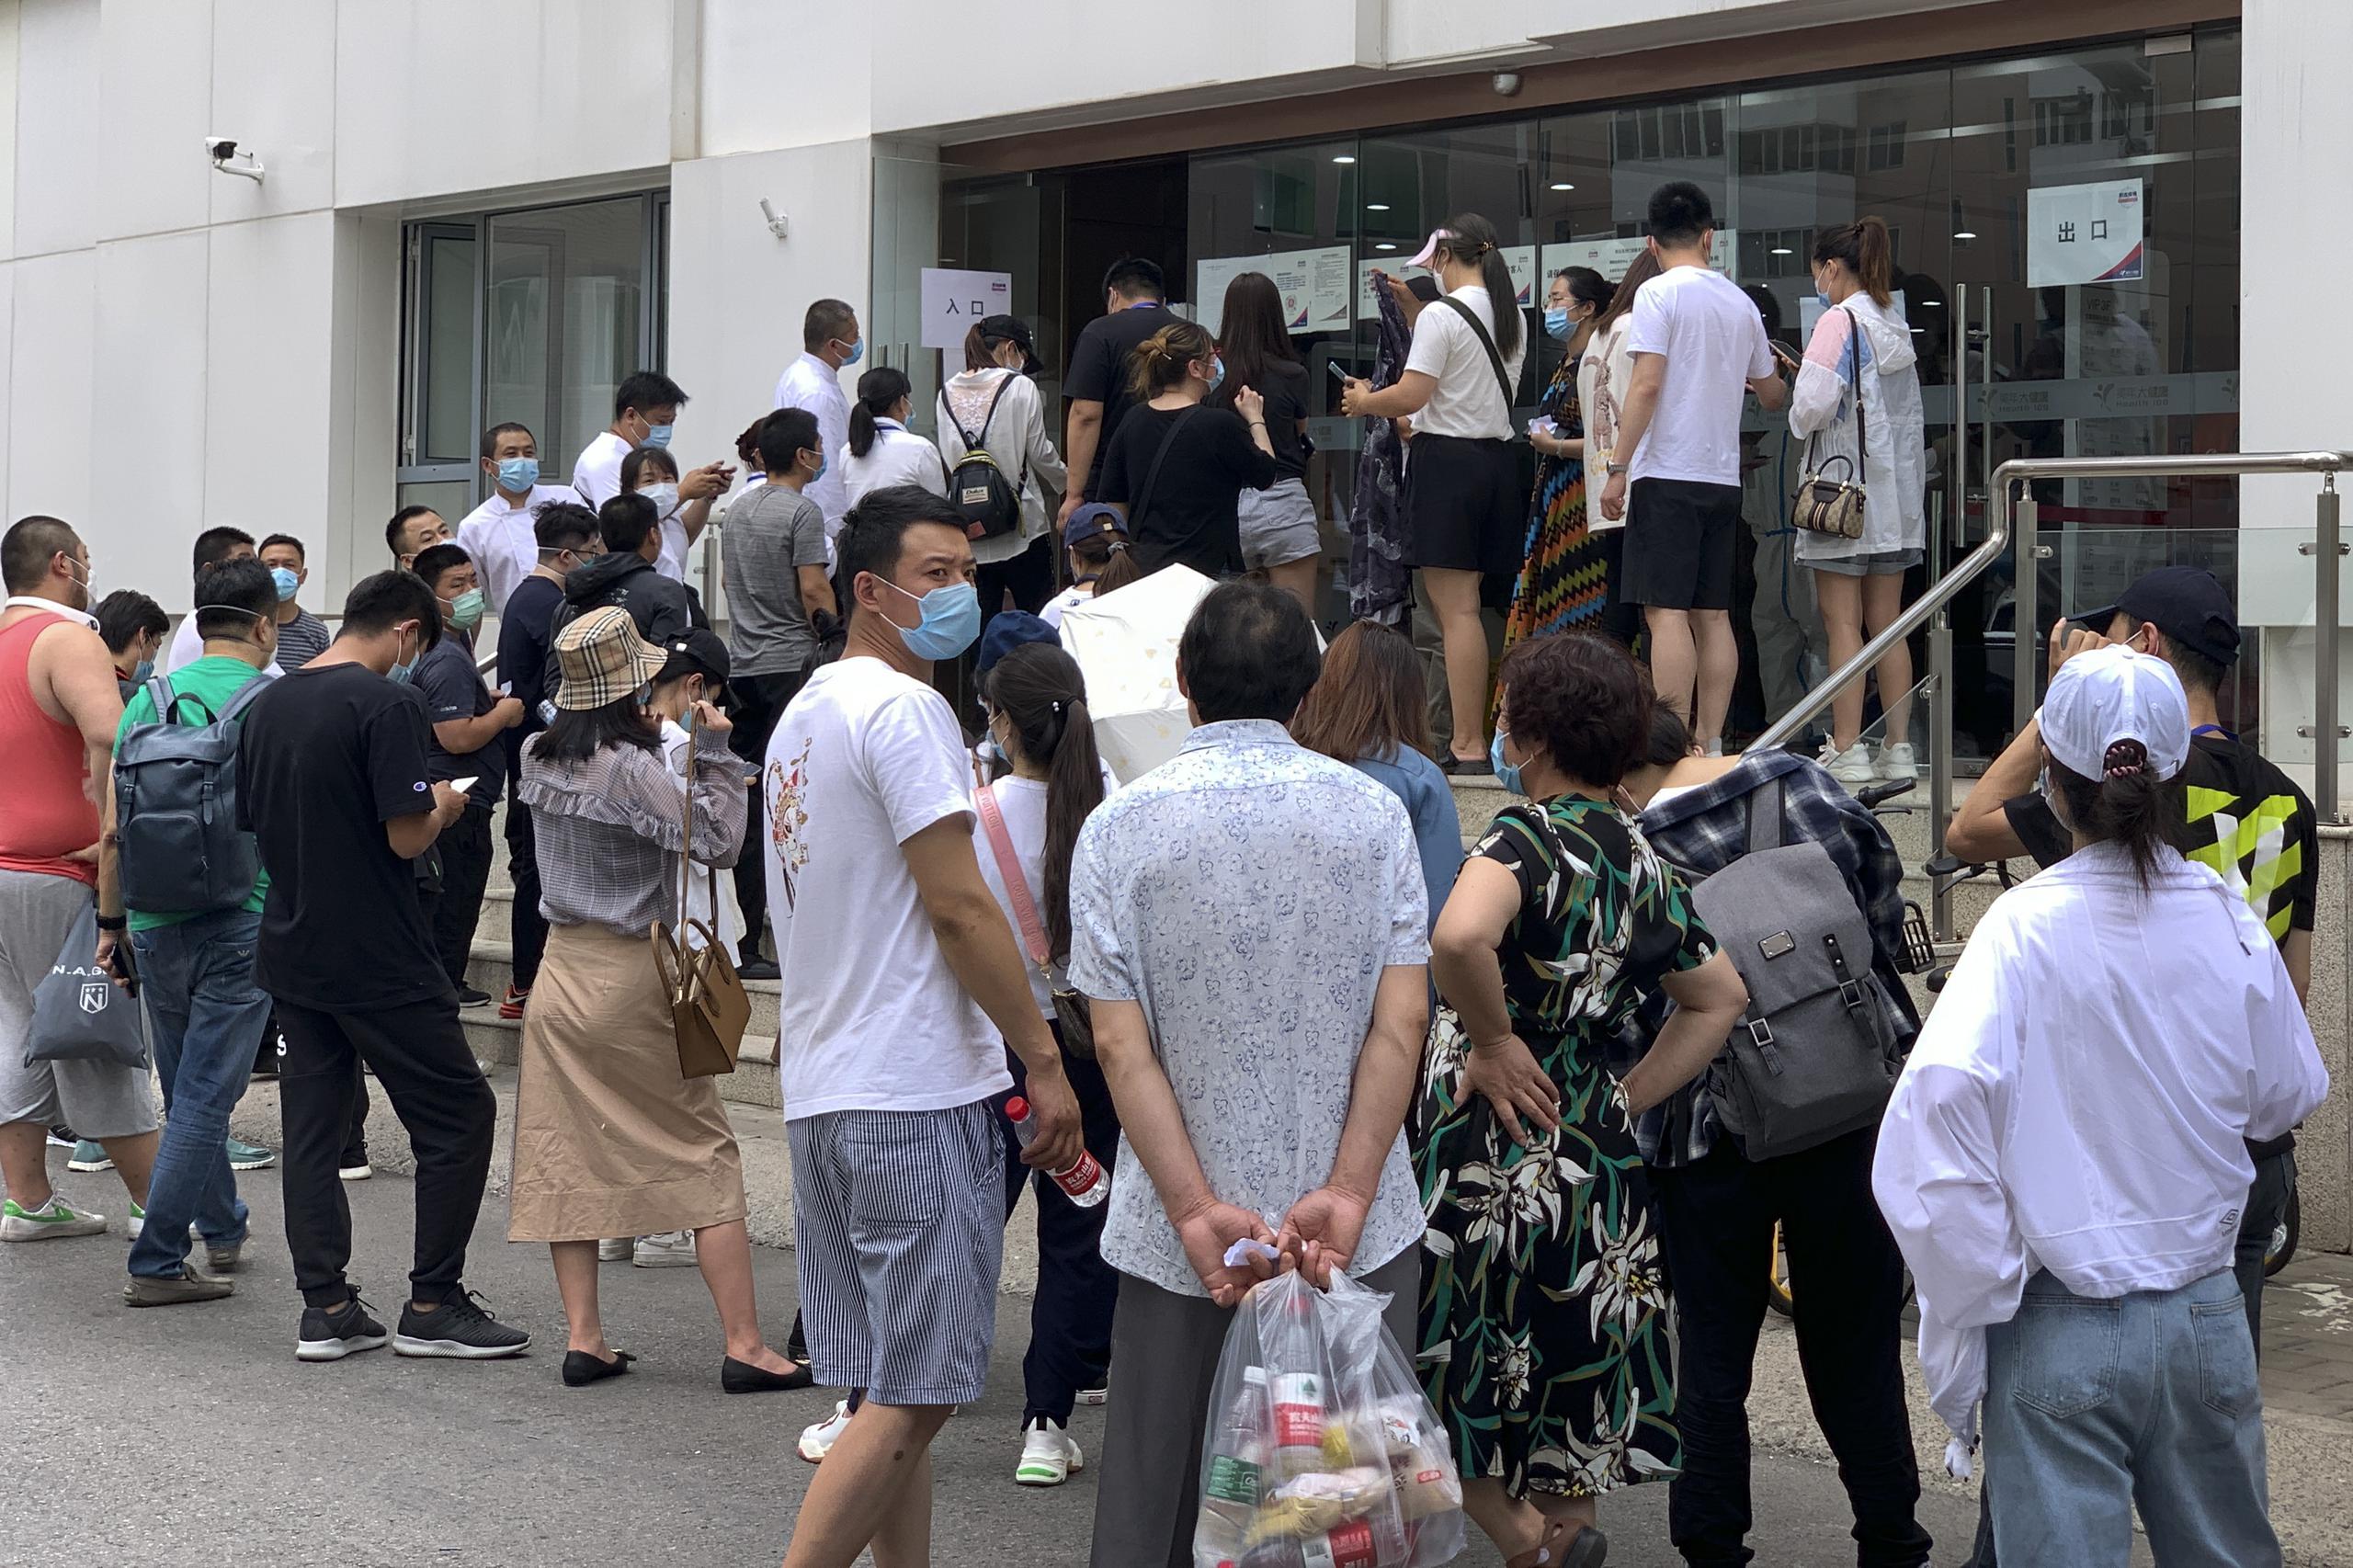 Unas personas con mascarillas se forman afuera de un centro de salud para realizarse una prueba de ácido nucleico en Beijing